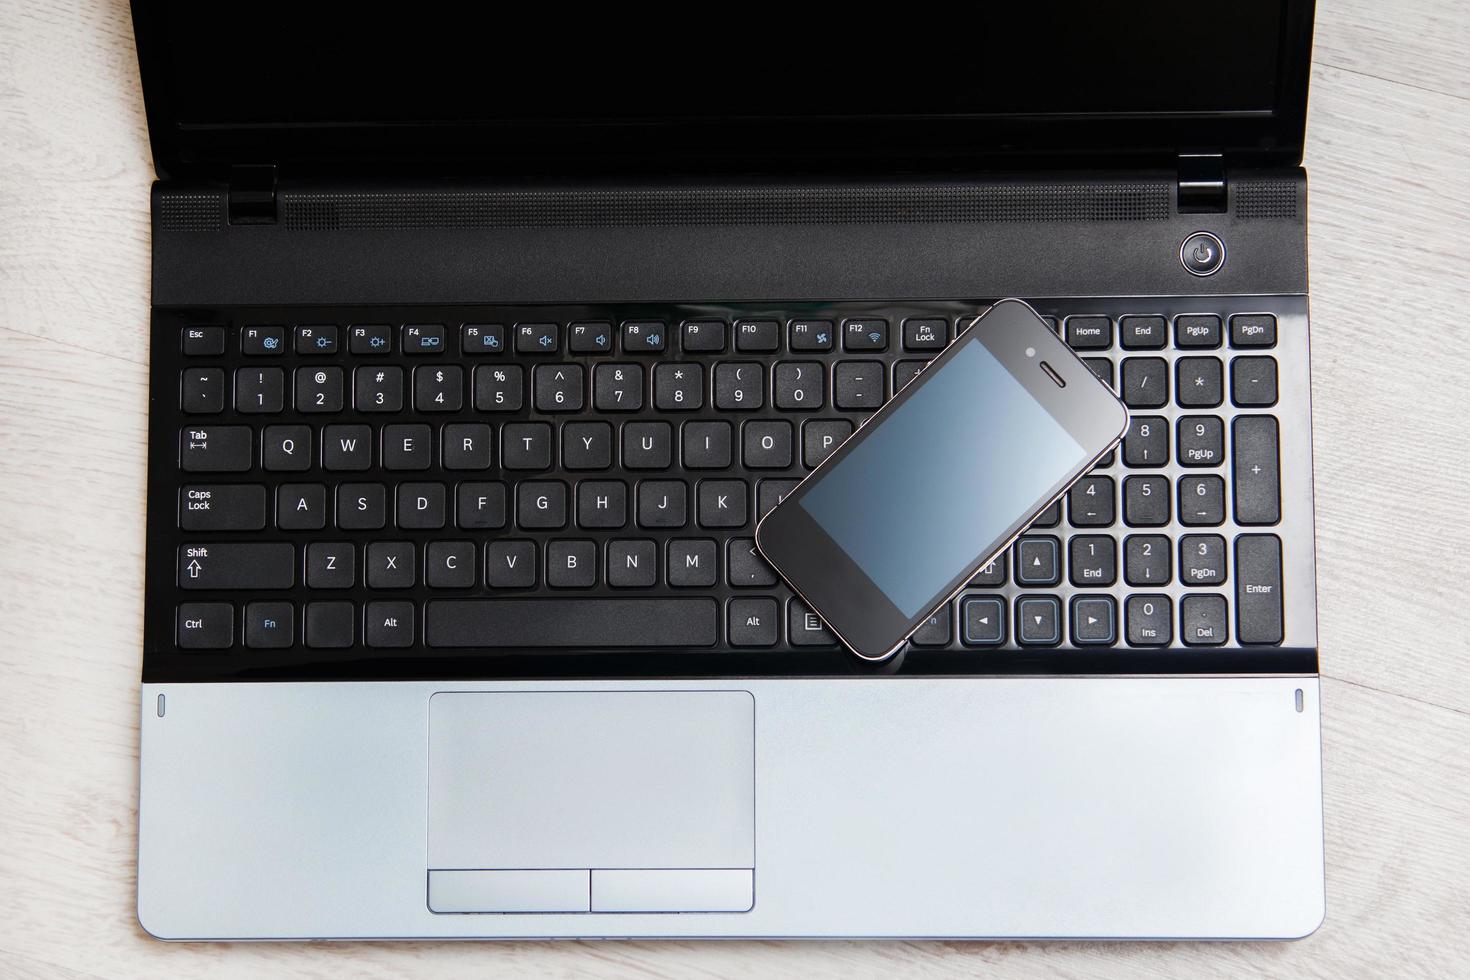 teclado para smartphone e notebook foto